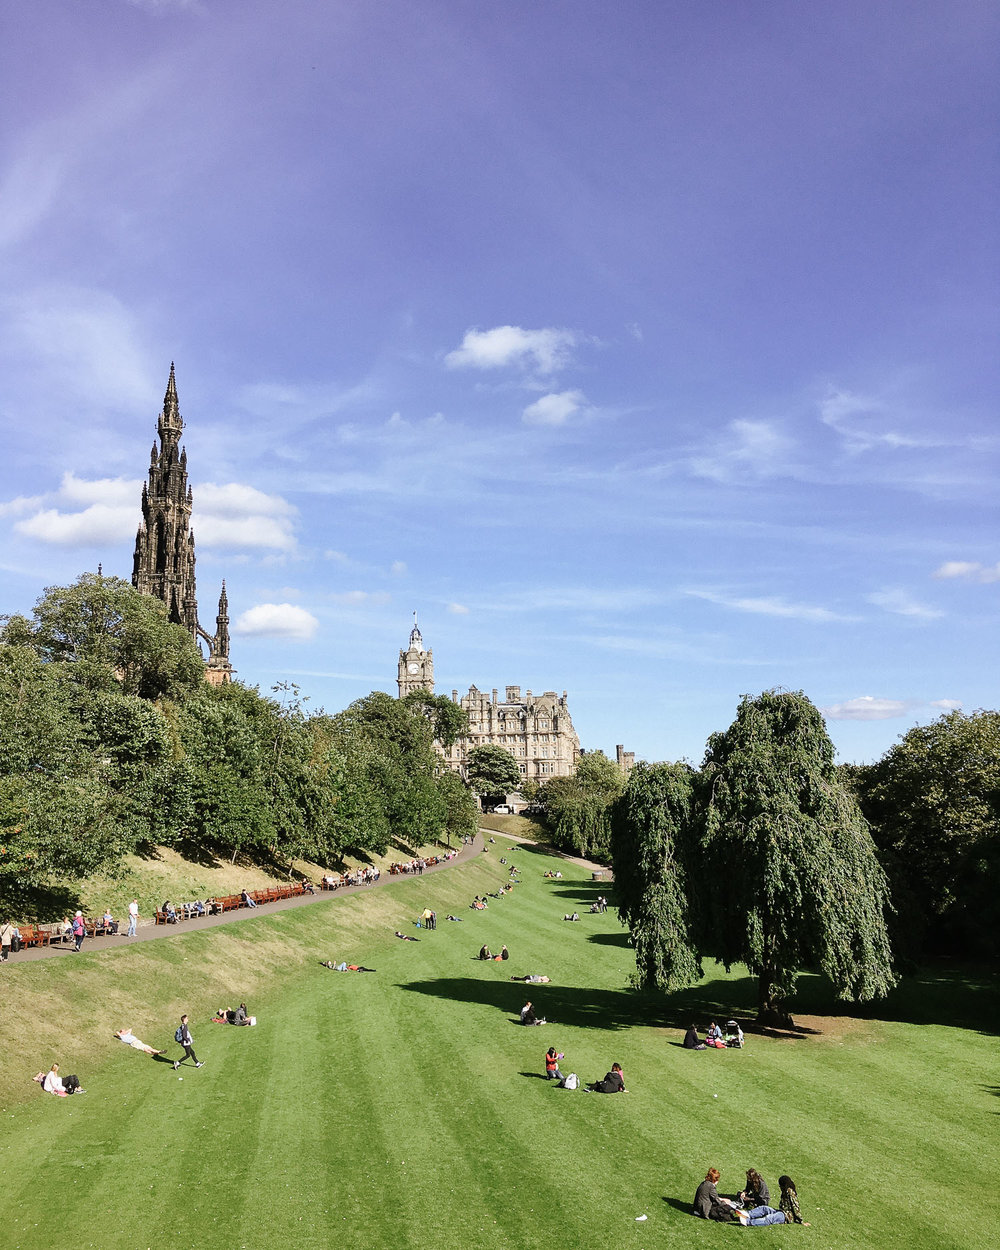 Princes St Gardens, Edinburgh, on a sunny day